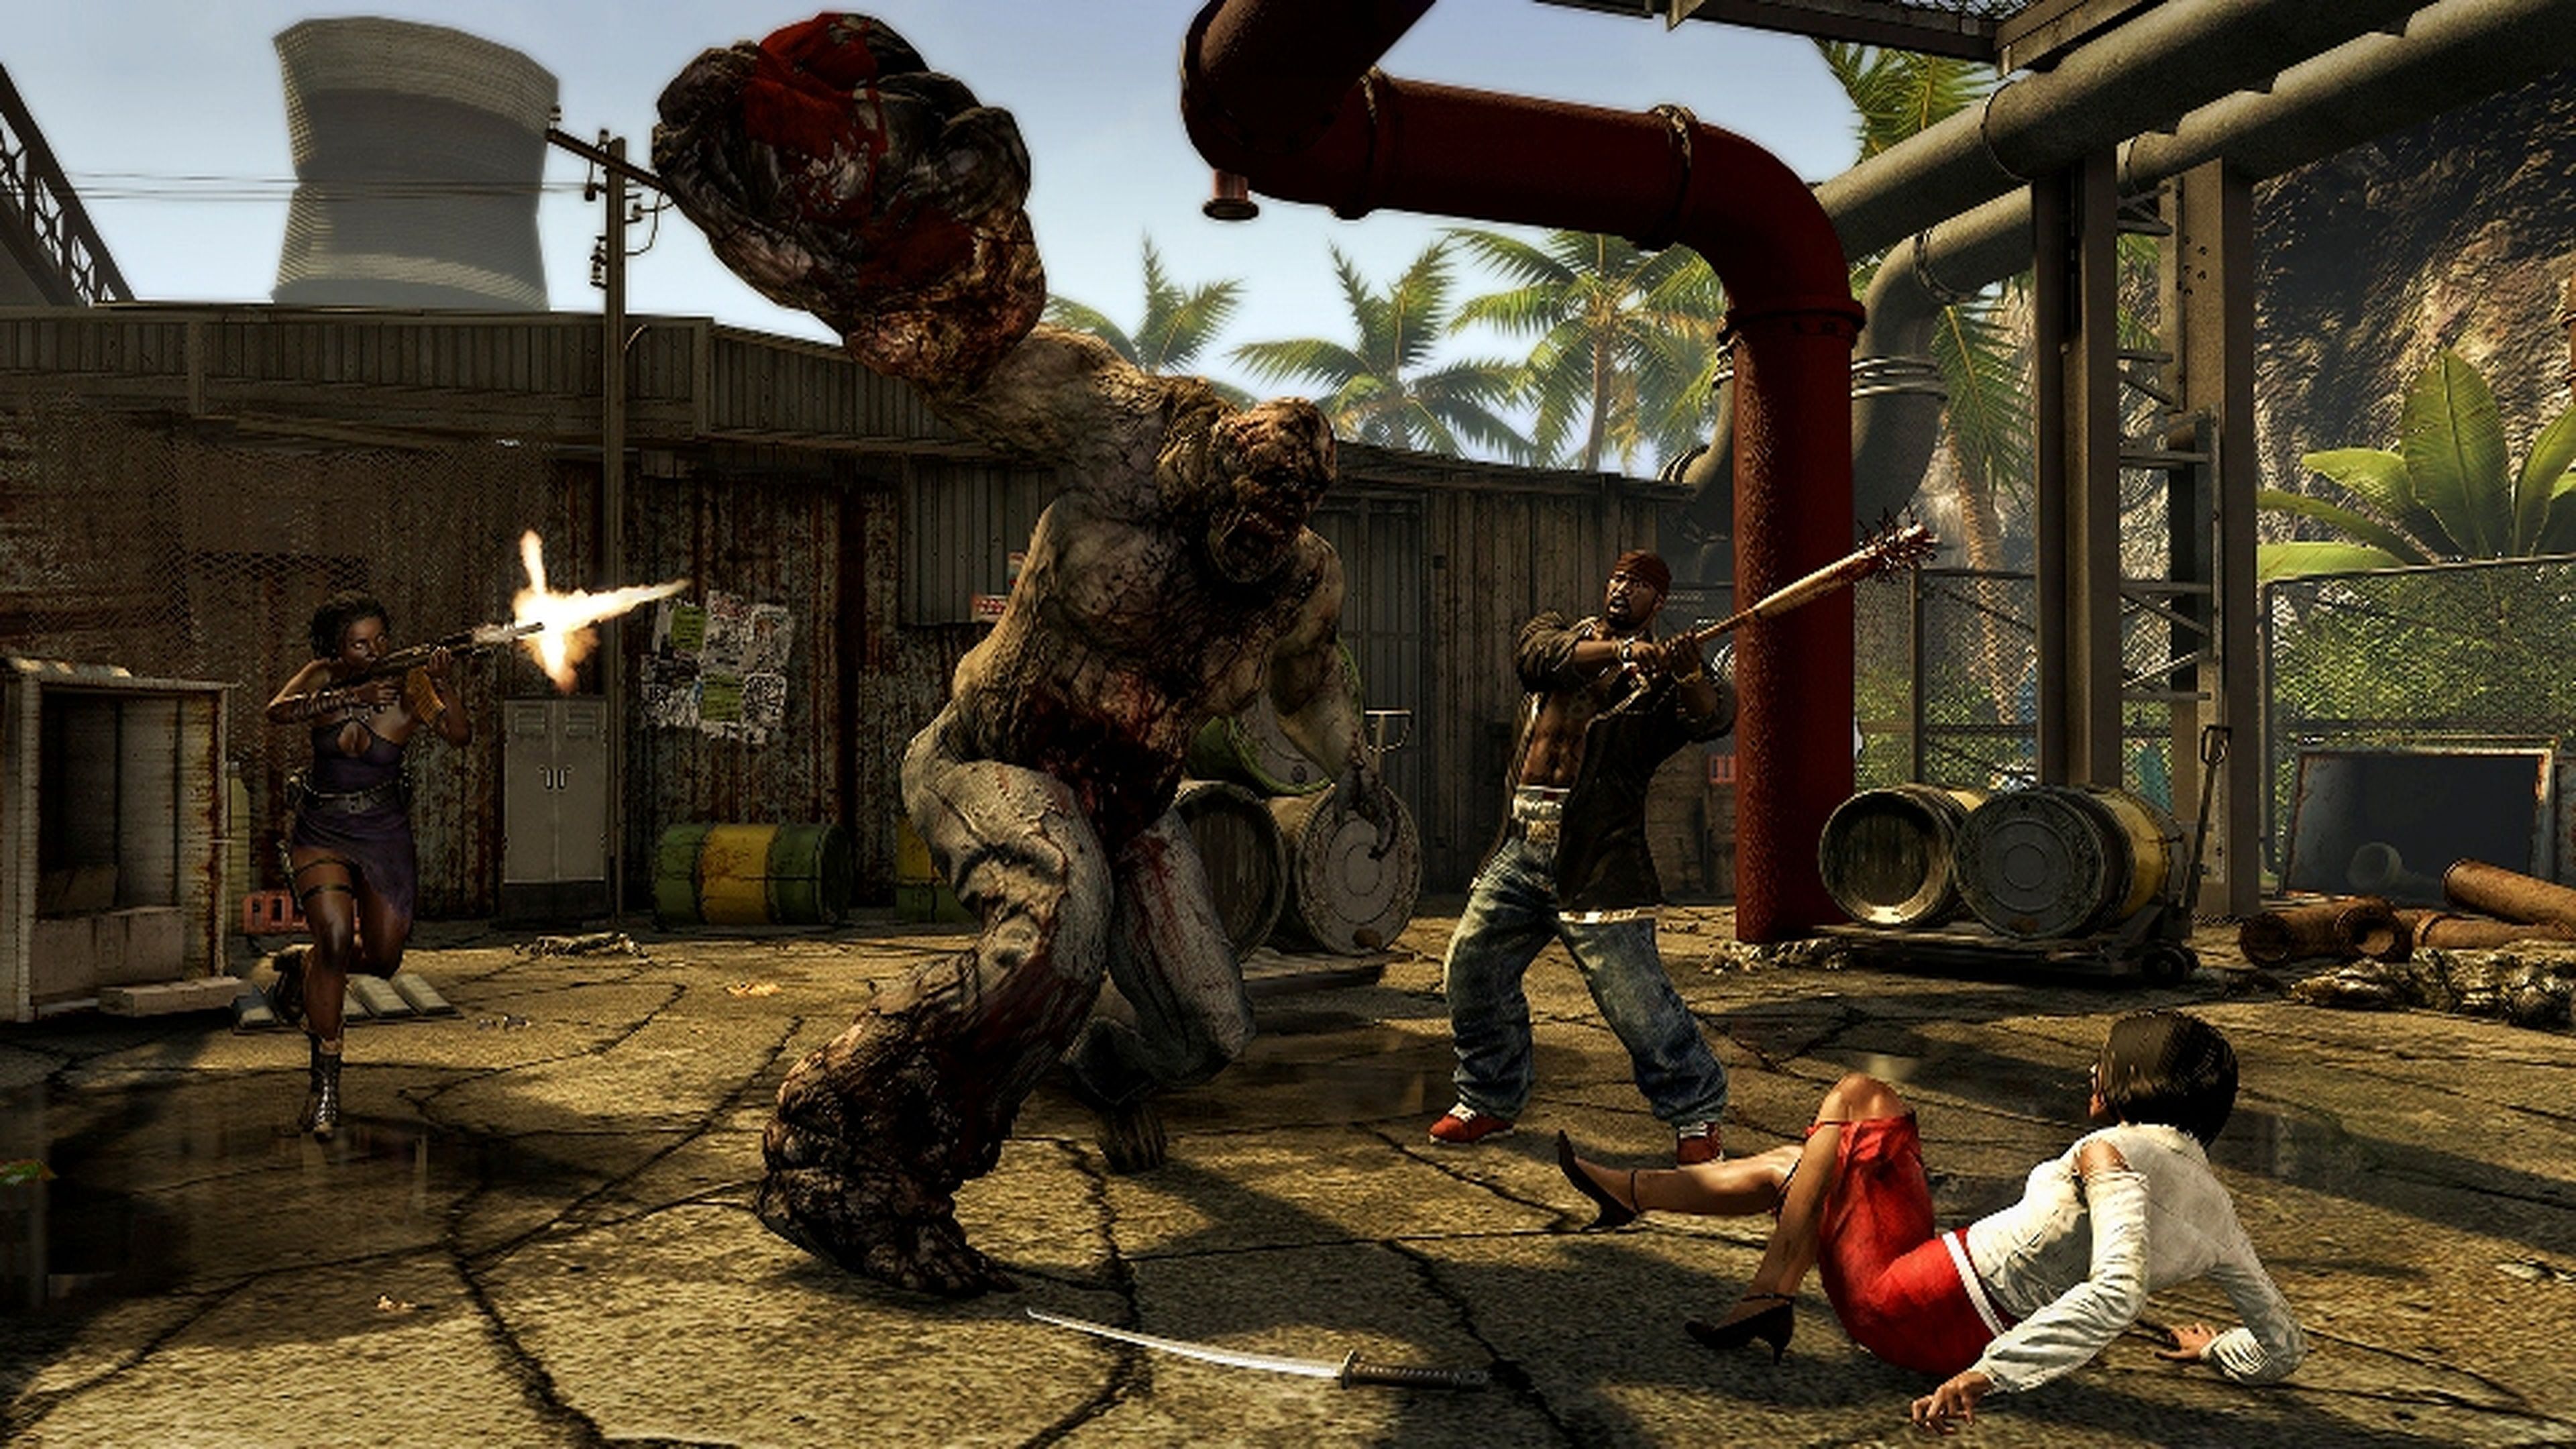 Avance de Dead Island Riptide en PS3, 360 y PC